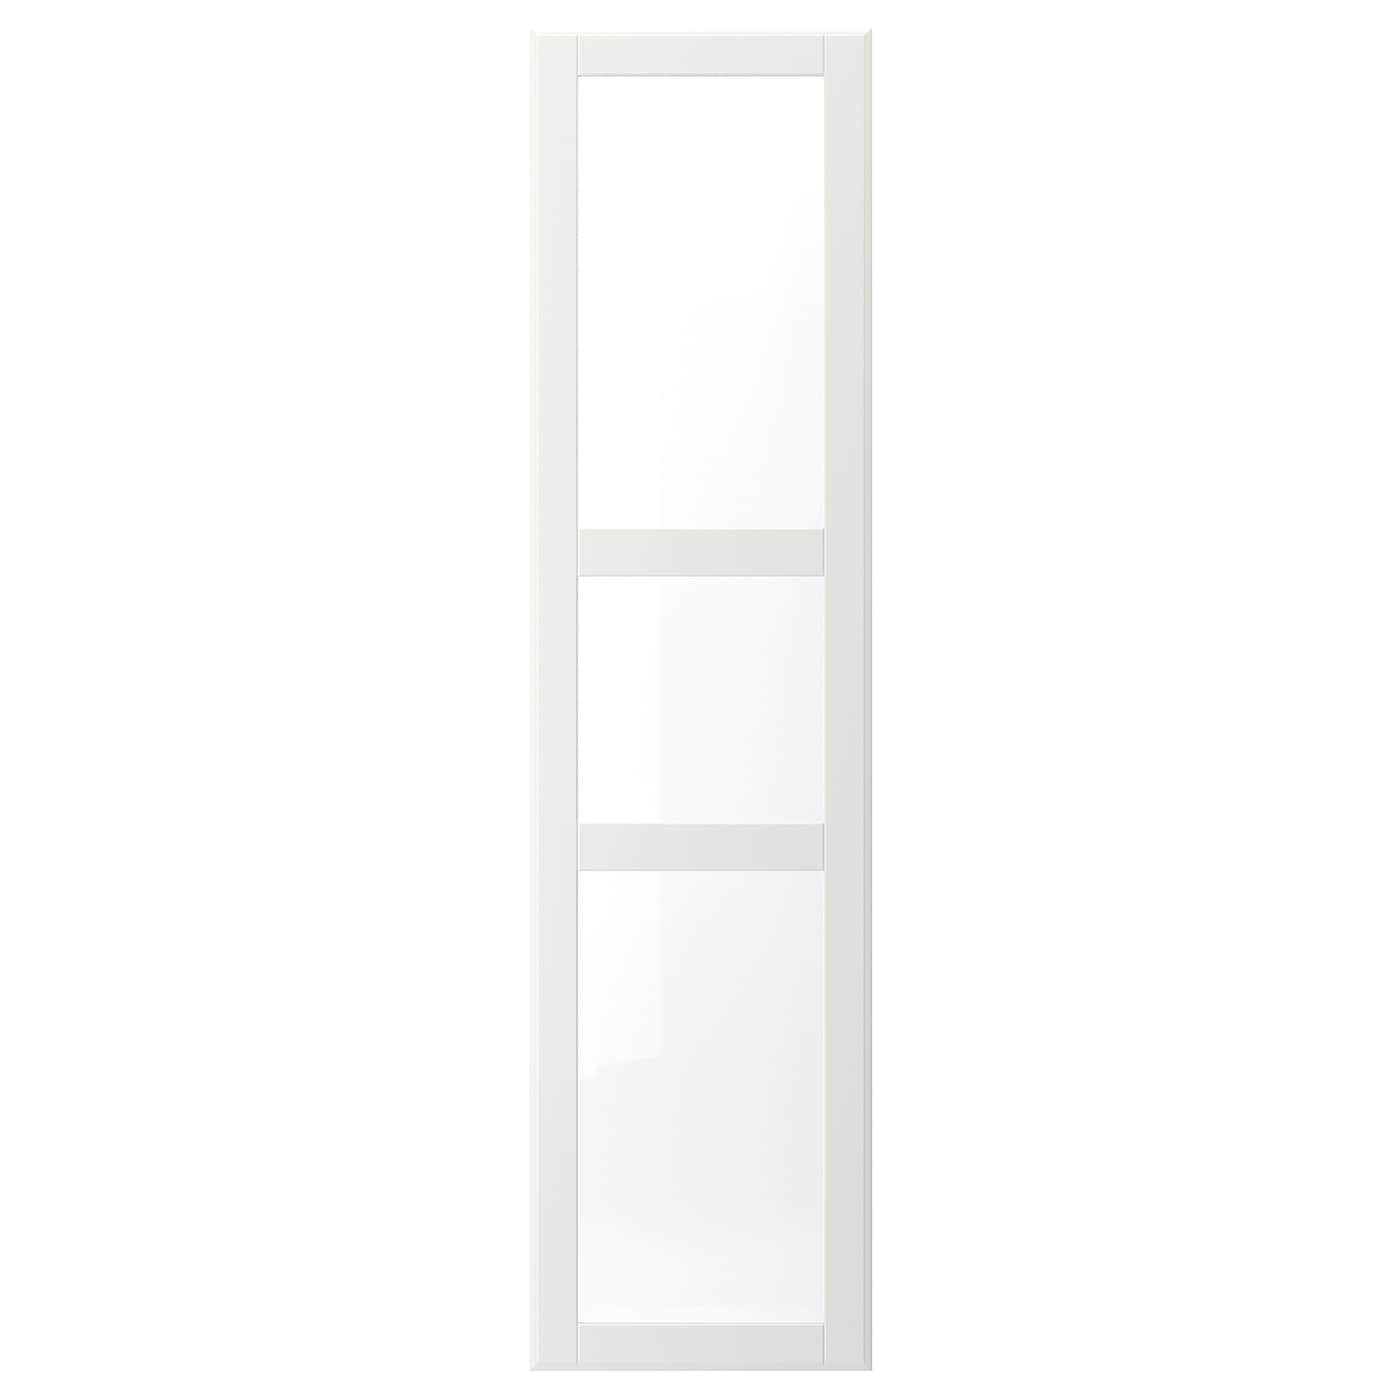 Дверь шкафа - TYSSEDAL IKEA/ ТИССЕДАЛЬ ИКЕА, 50x195 см, белый